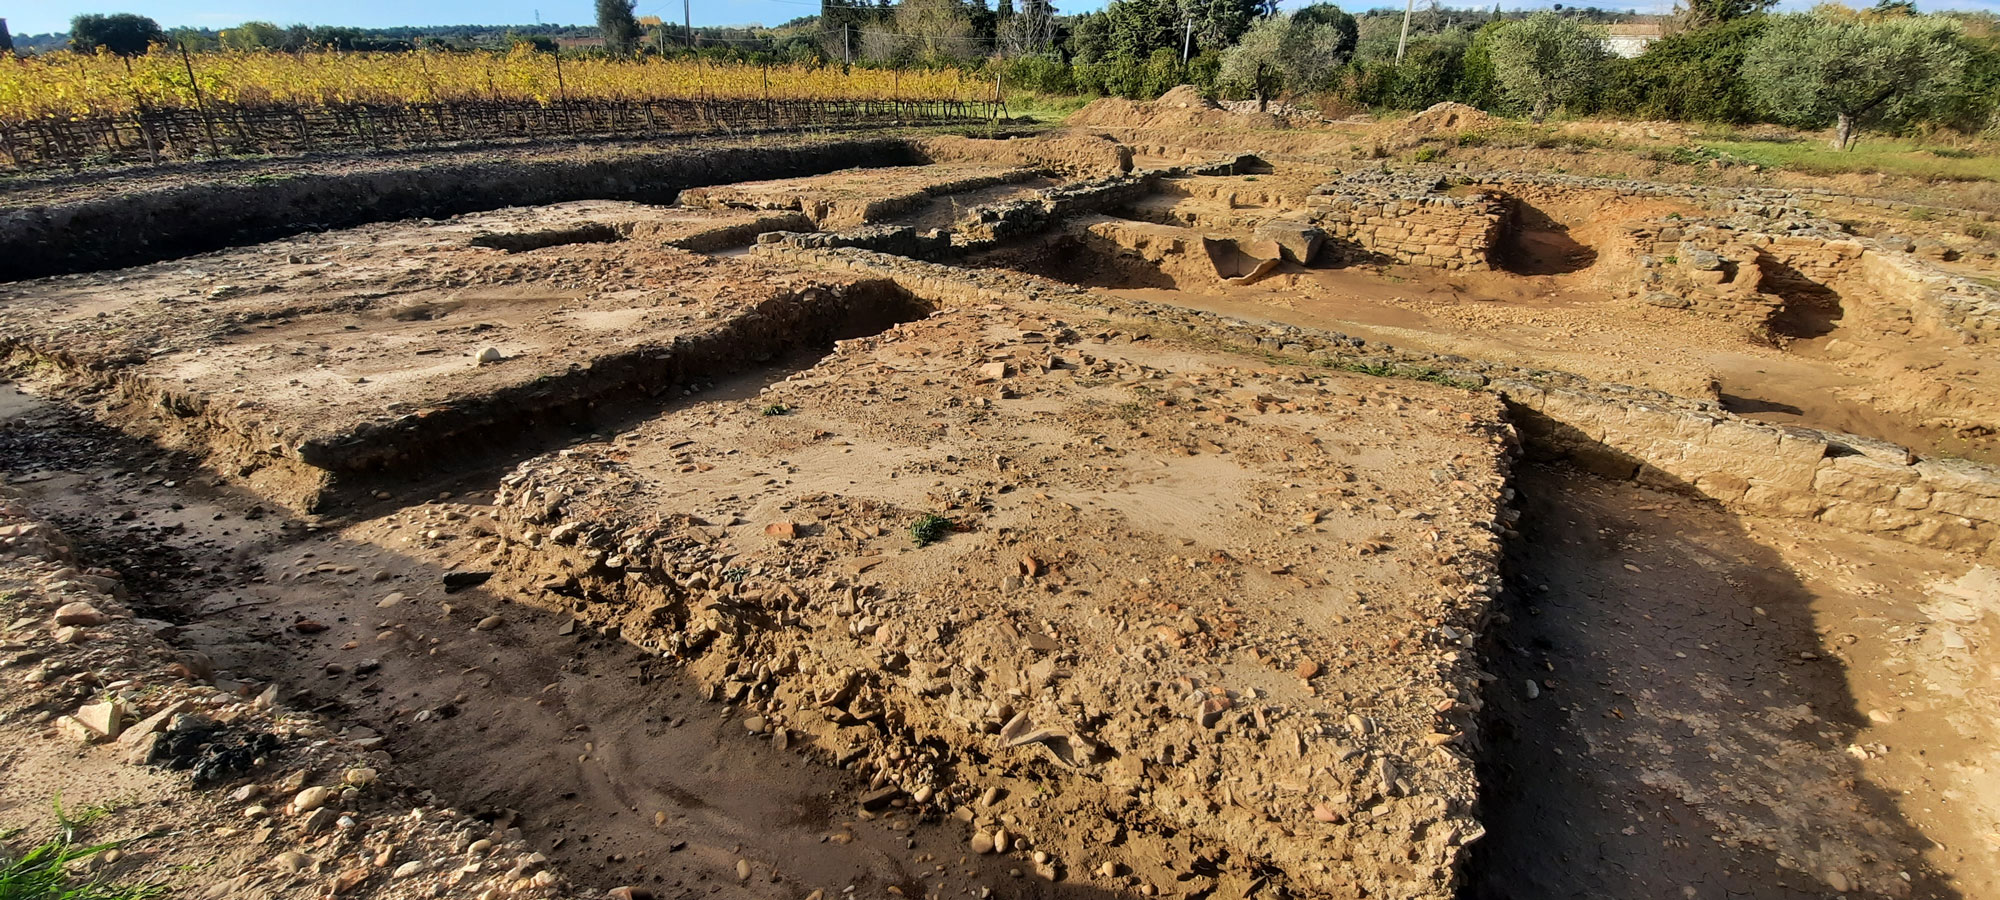 Site de fouilles archéologiques et caves romaines, partez à la découverte du vin antique